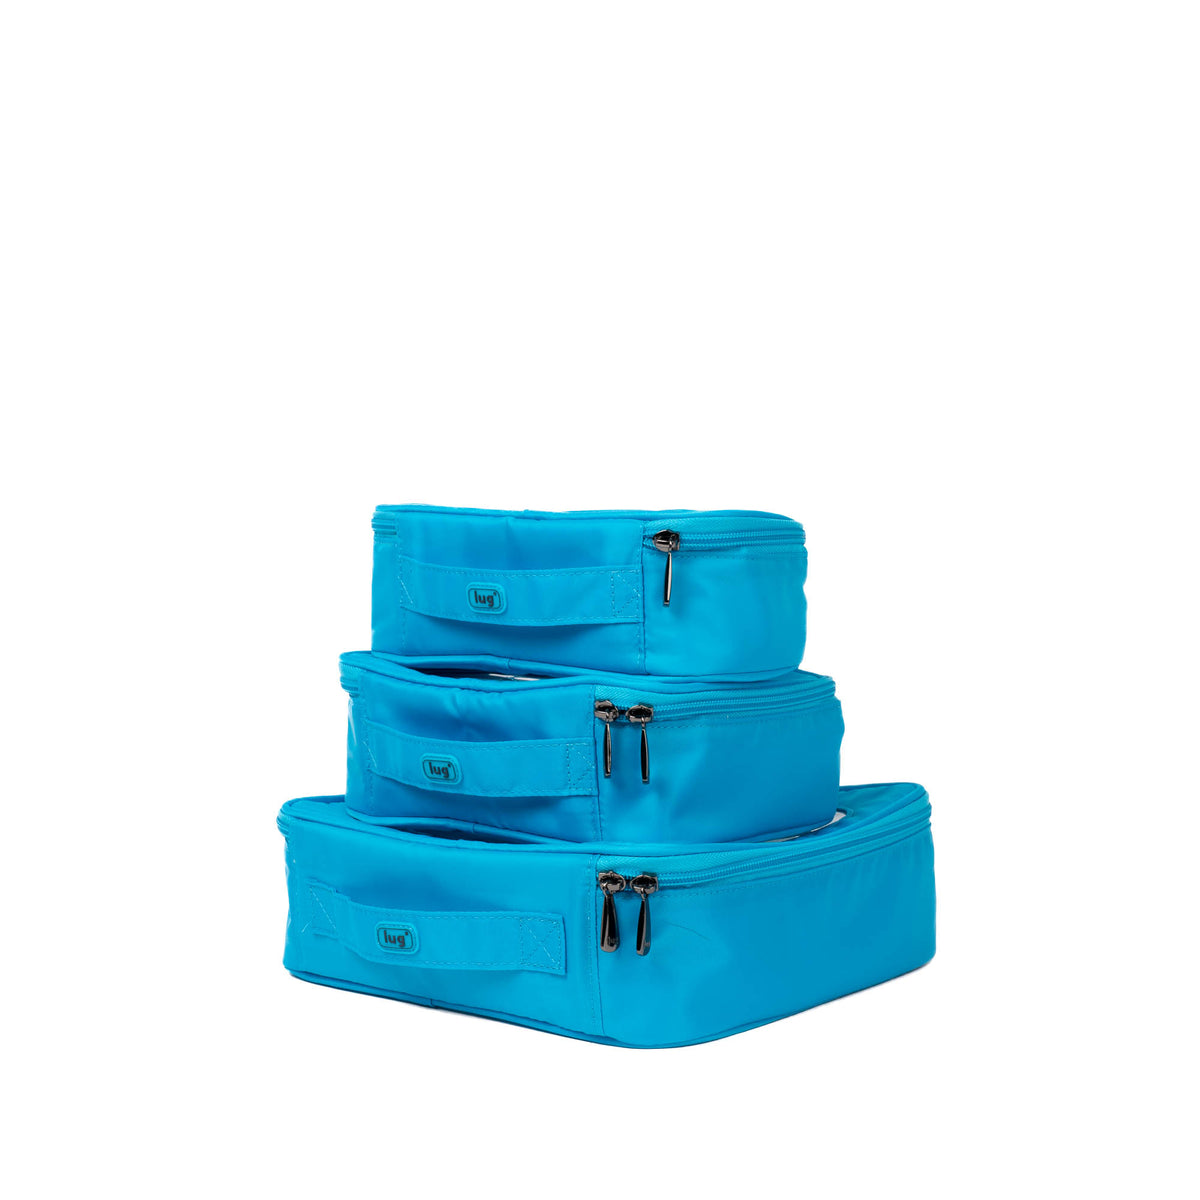 Bento Box 3pc Storage Container Set